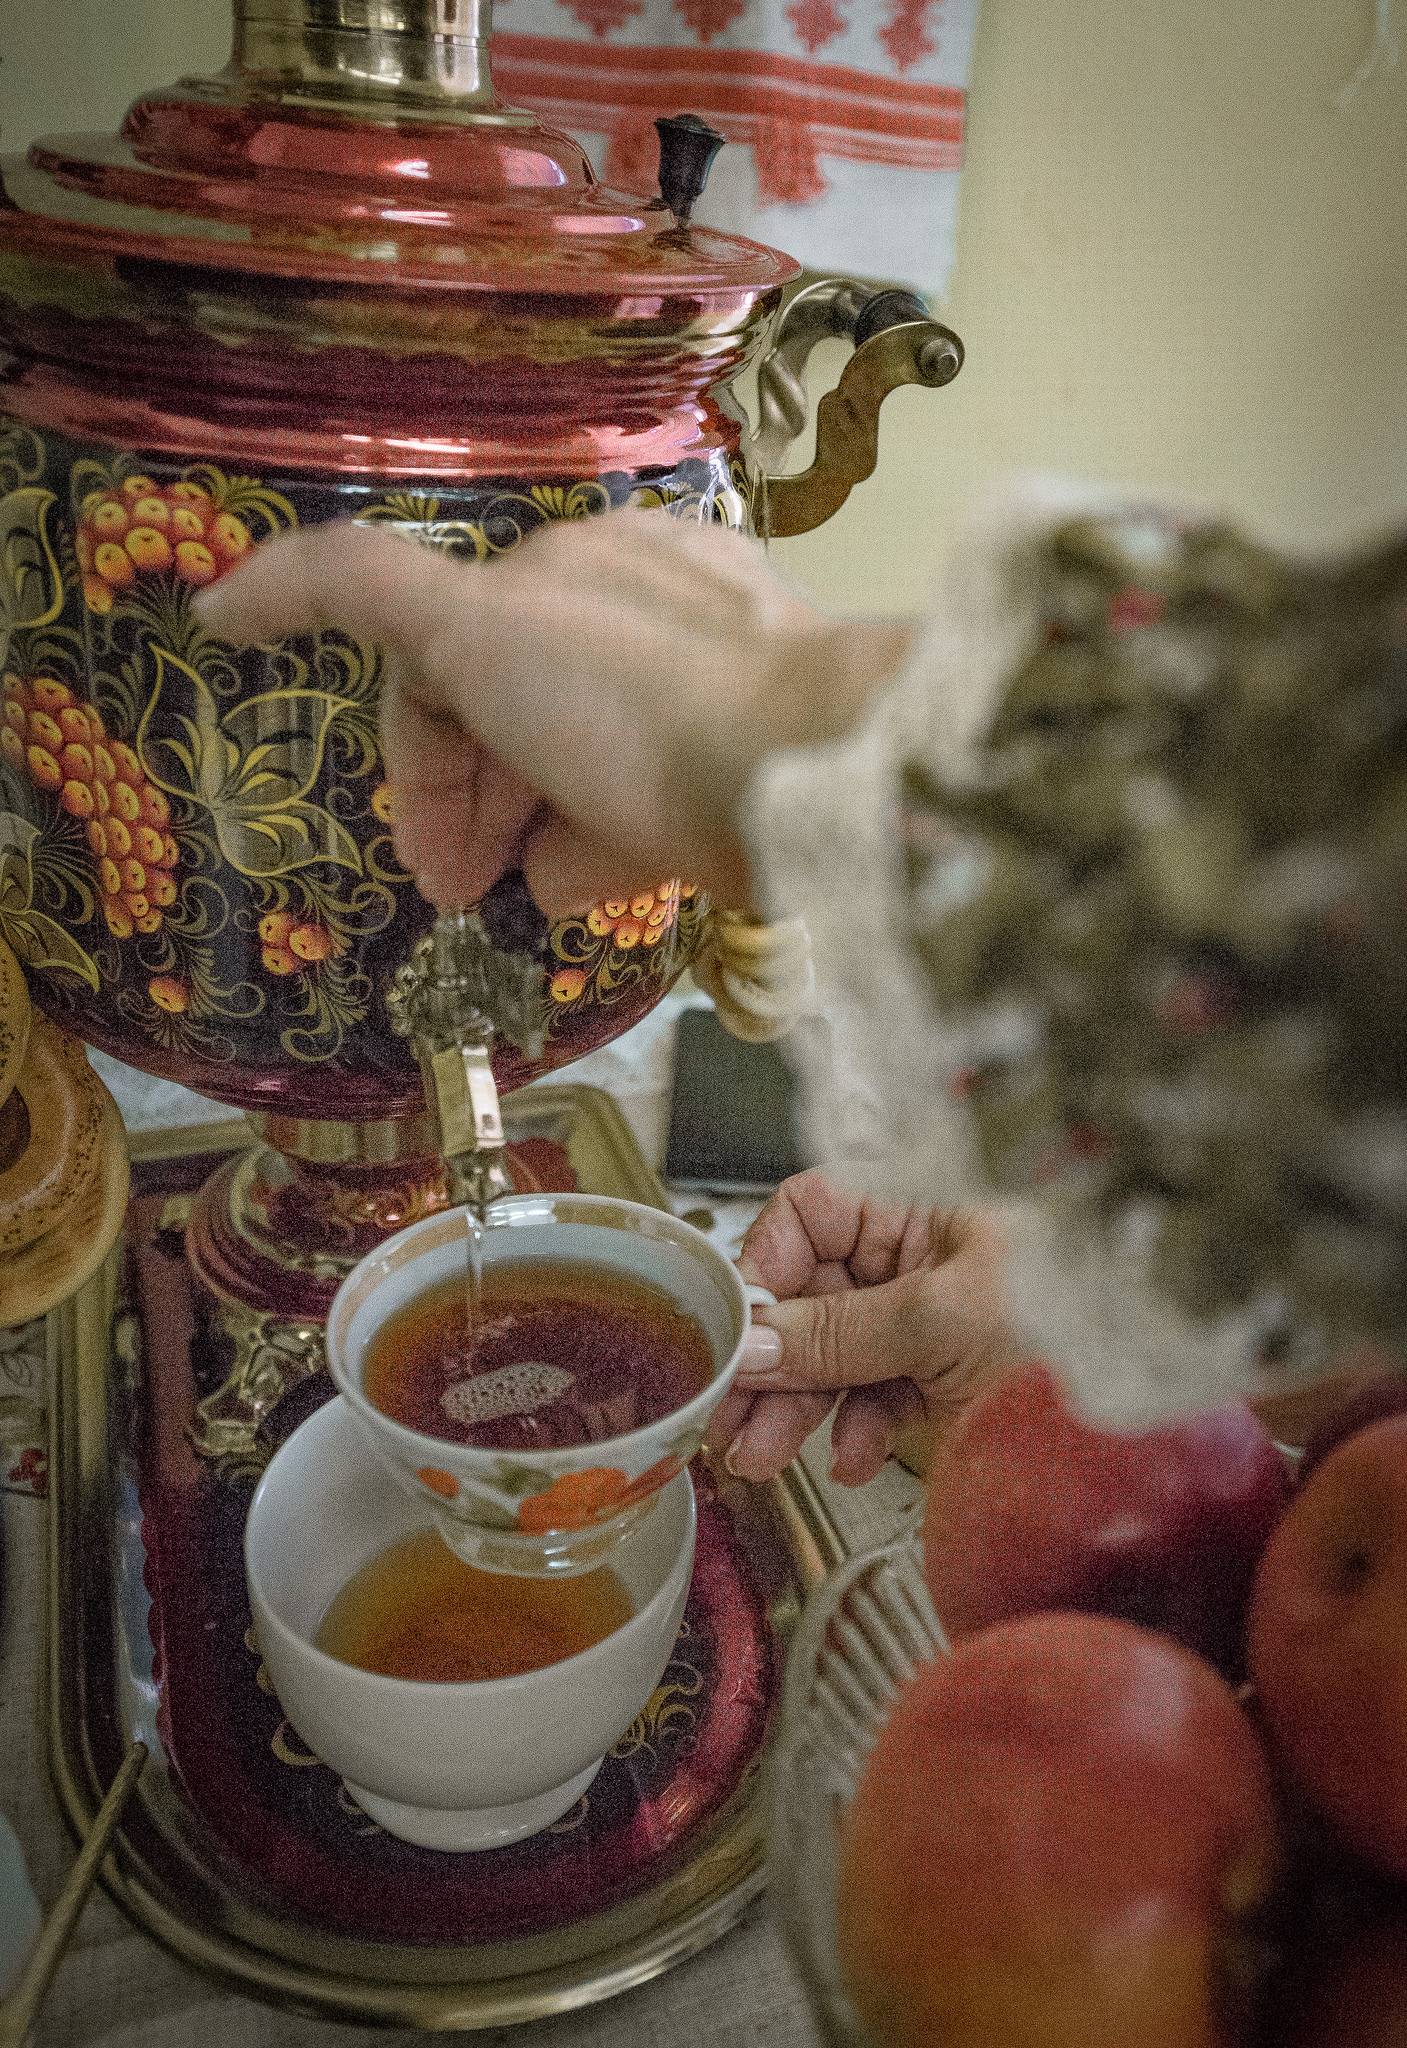 История появления традиции чаепития на руси